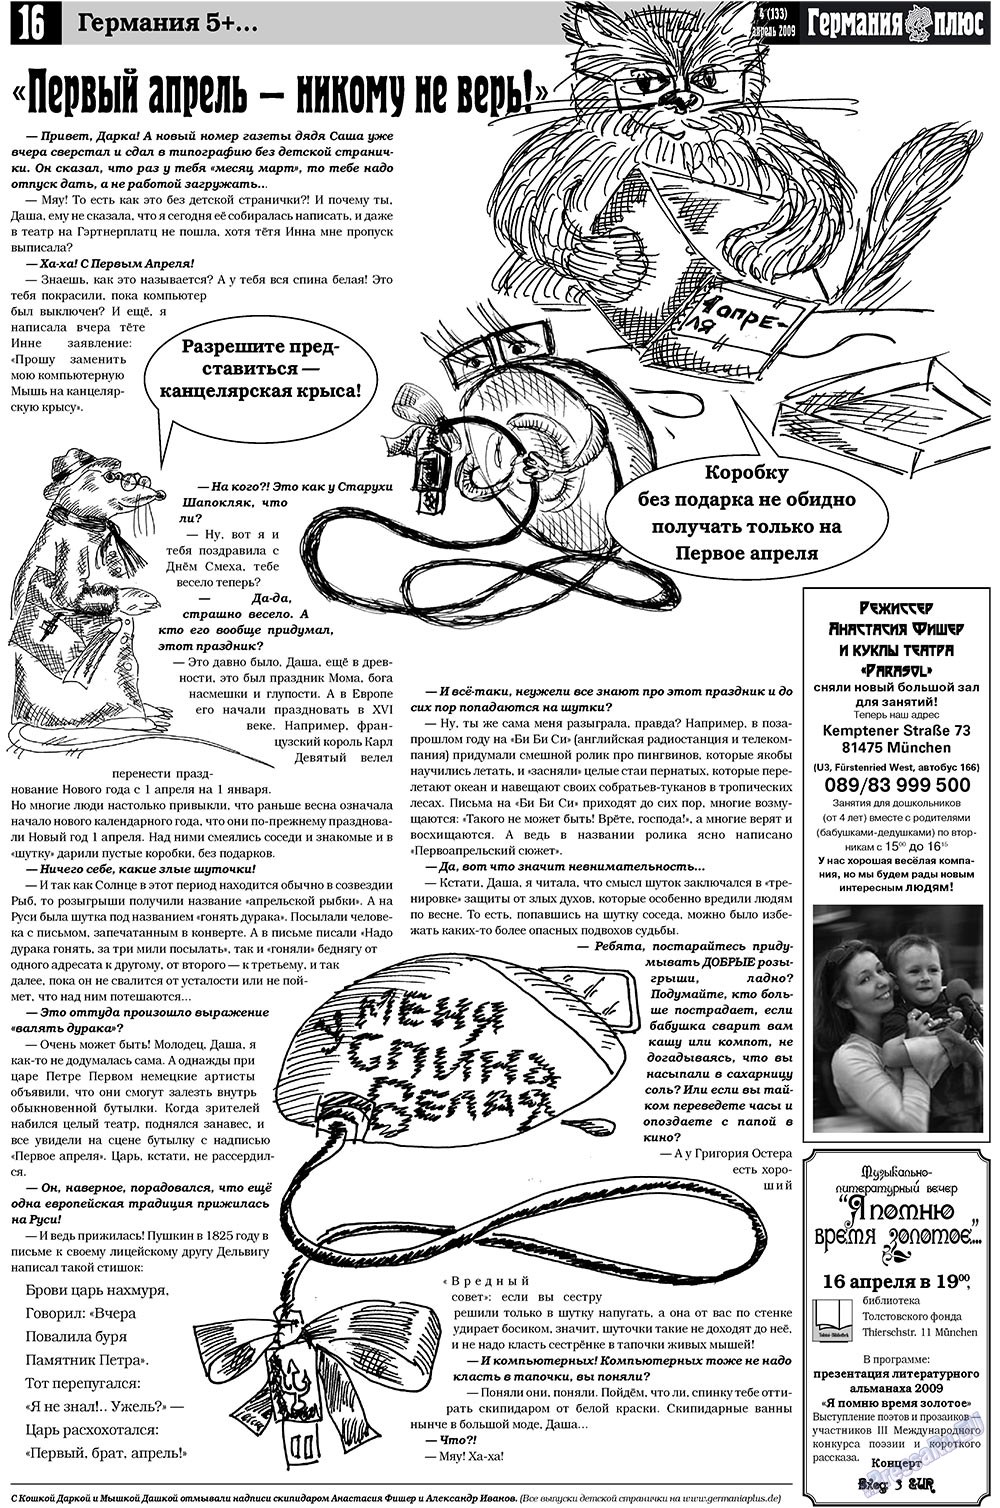 Германия плюс (газета). 2009 год, номер 4, стр. 20